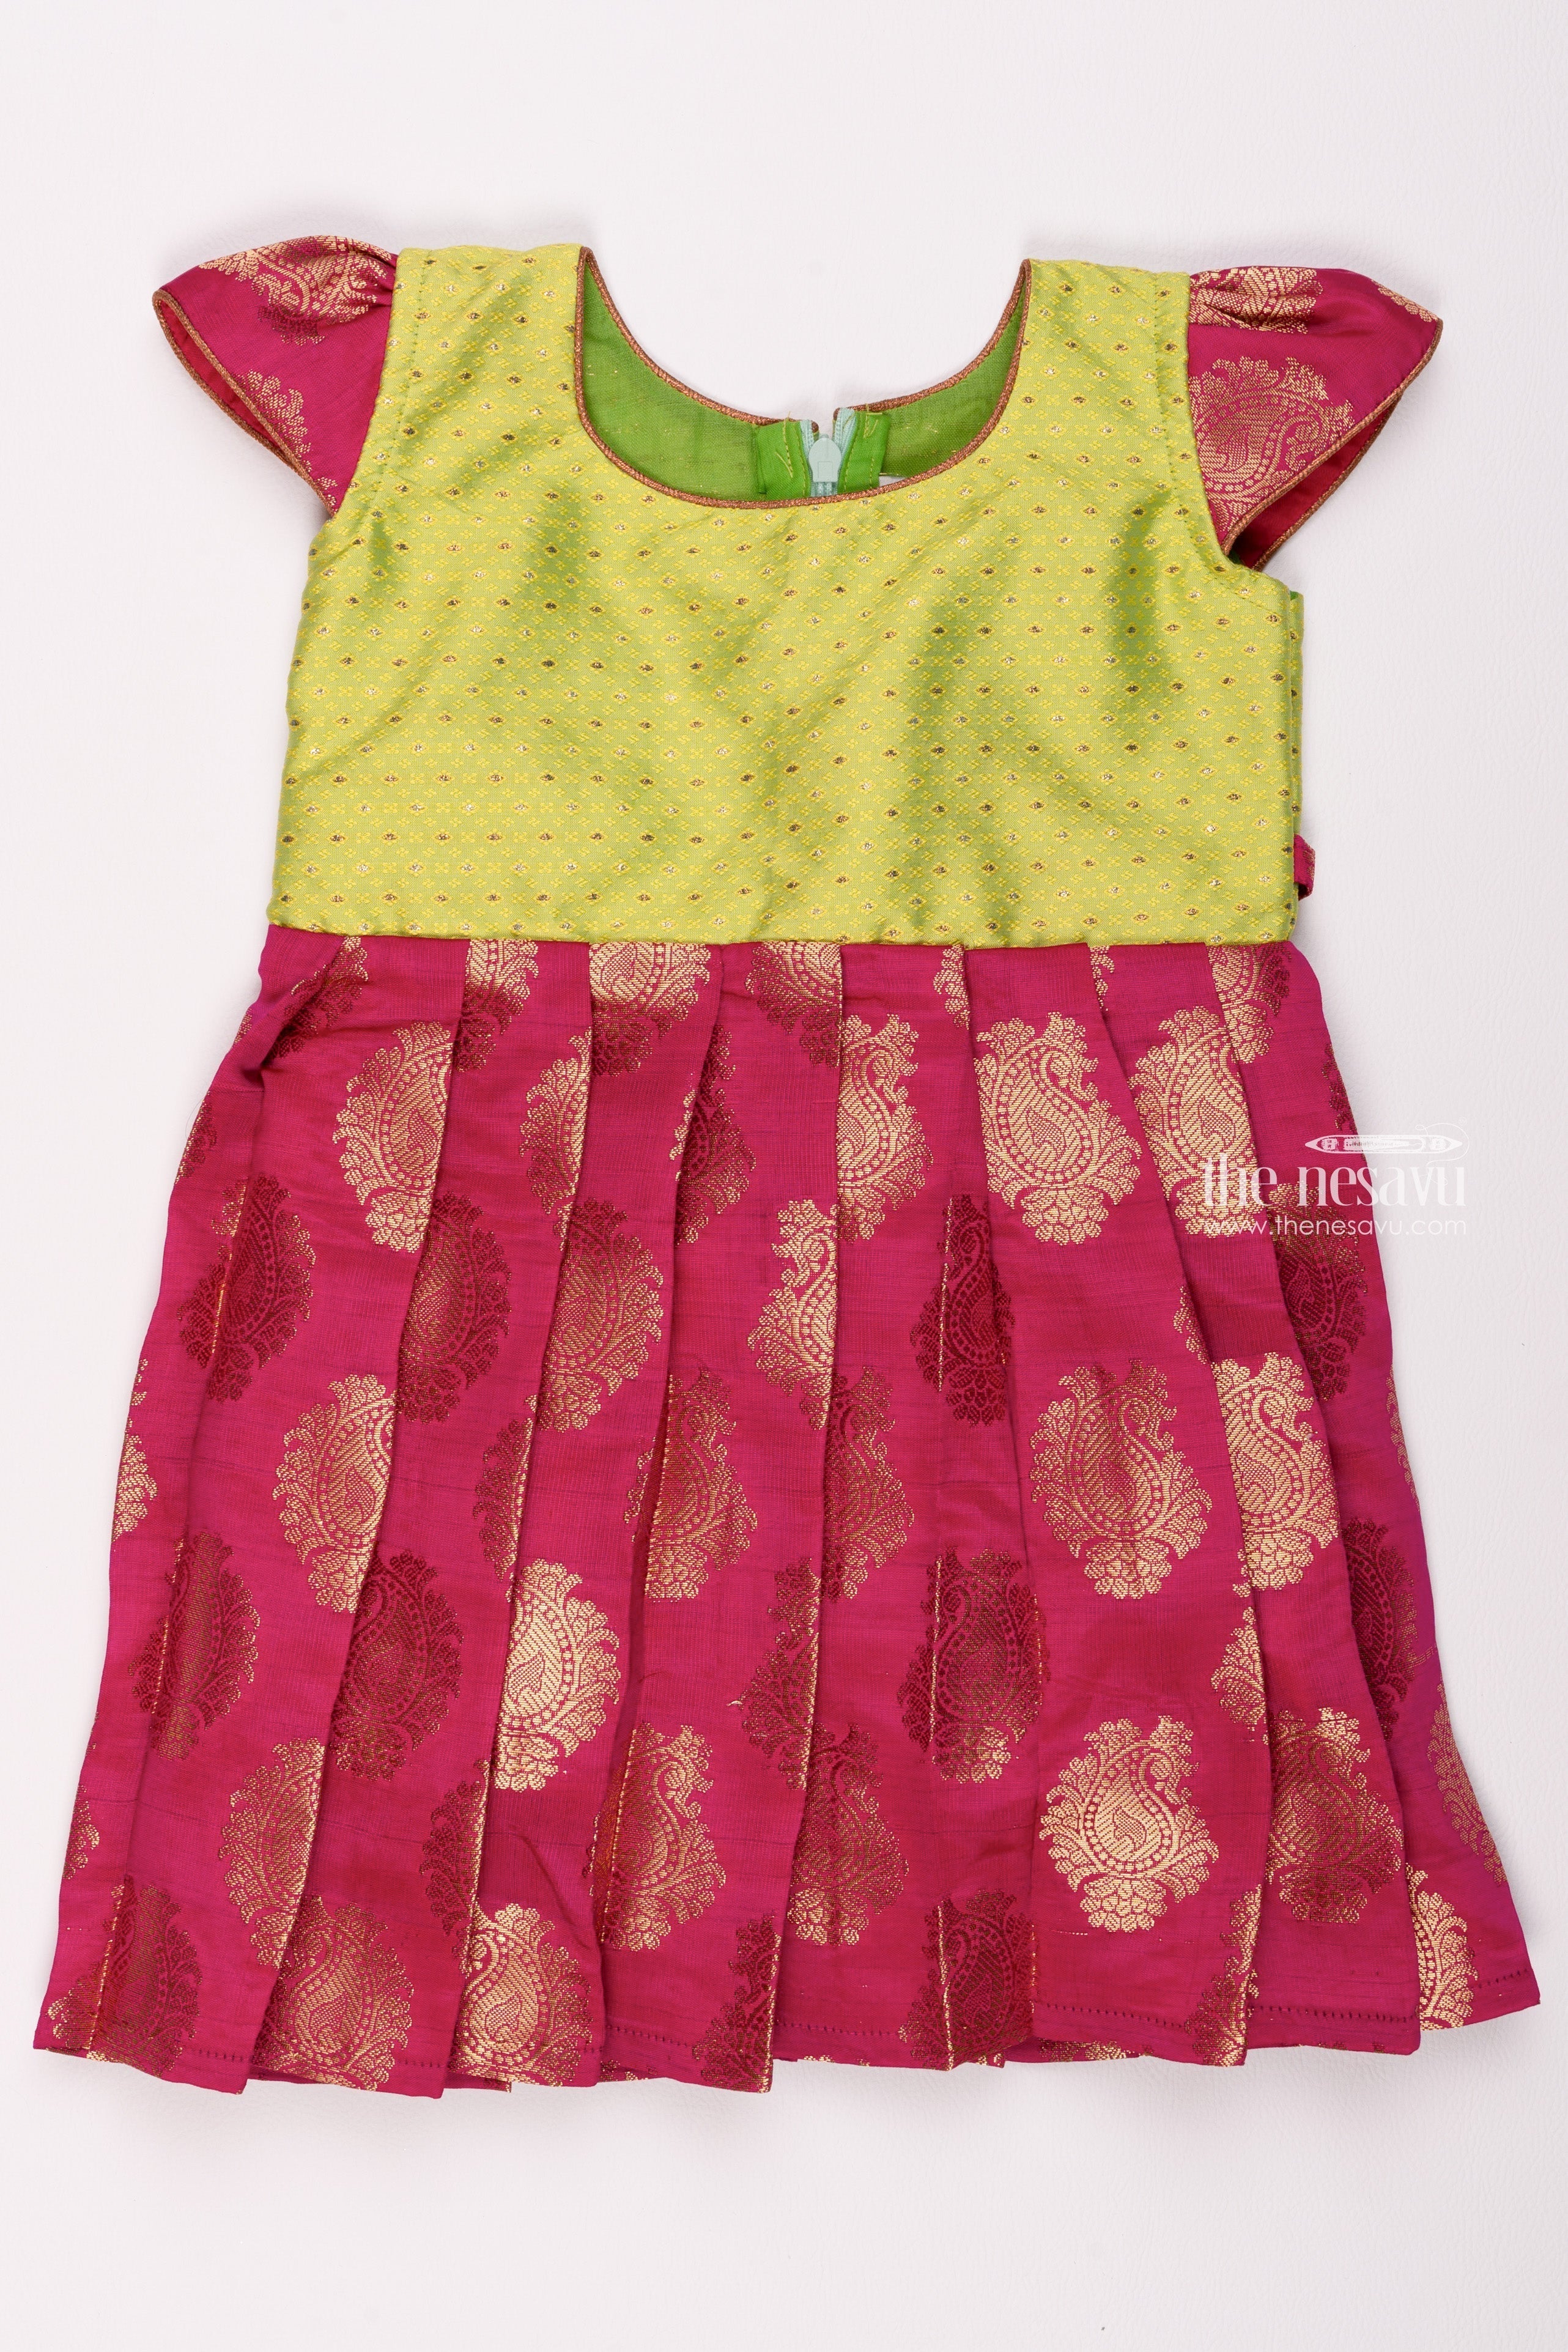 Pattu dress | Long gown design, Kids blouse designs, Simple blouses